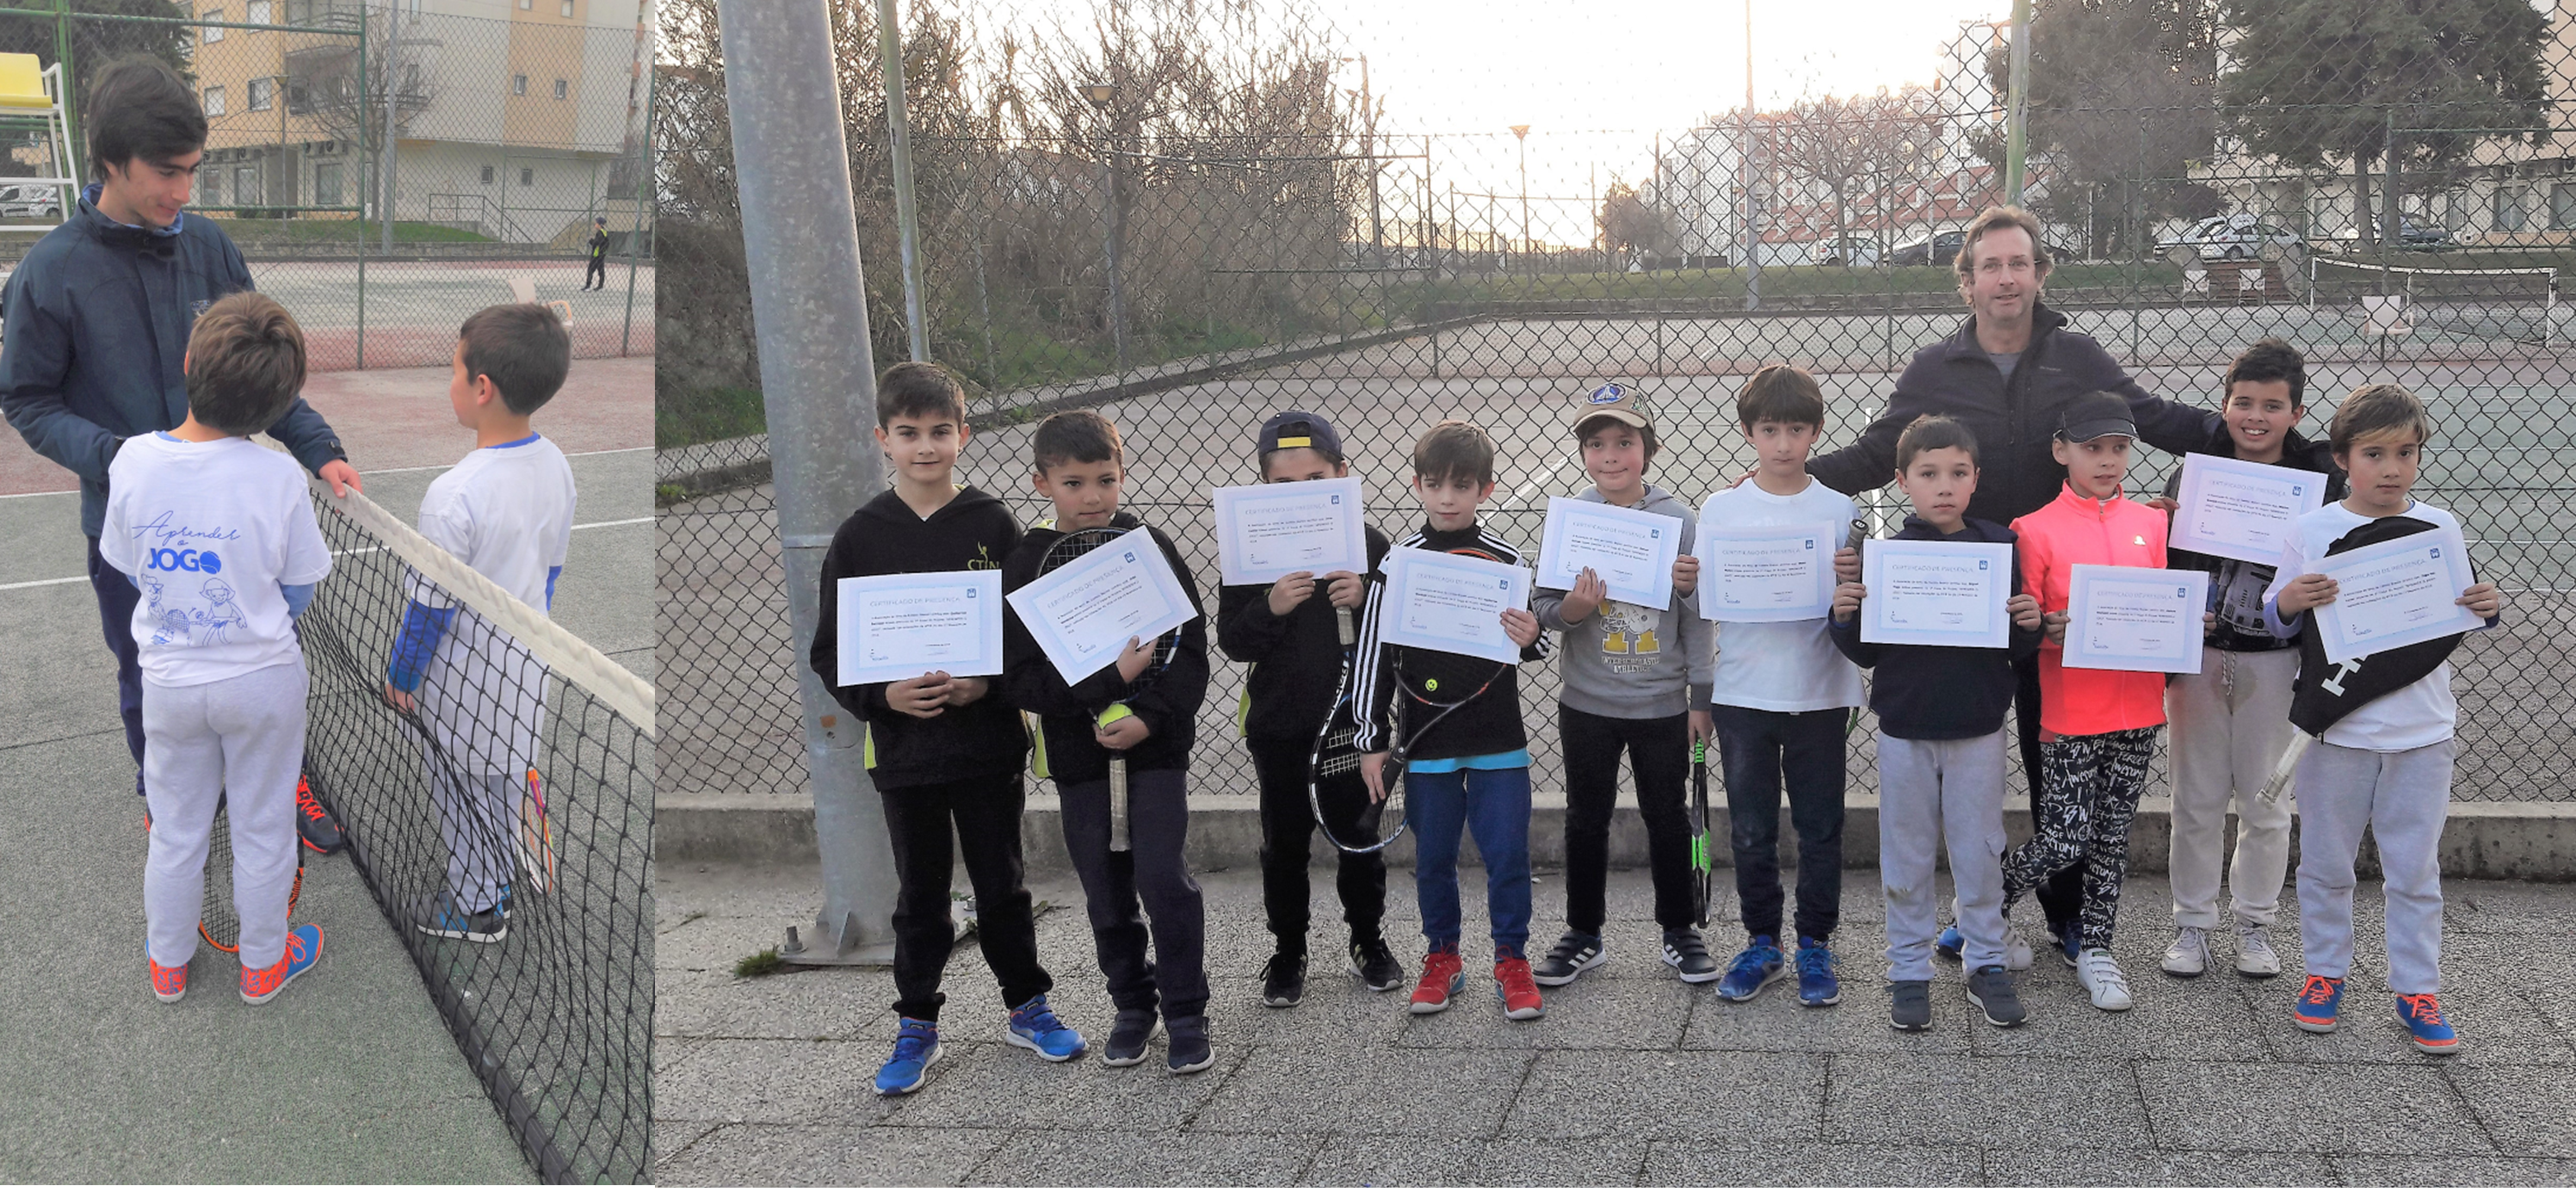 Associação de ténis de Castelo Branco inicia projeto 'Aprender o jogo'